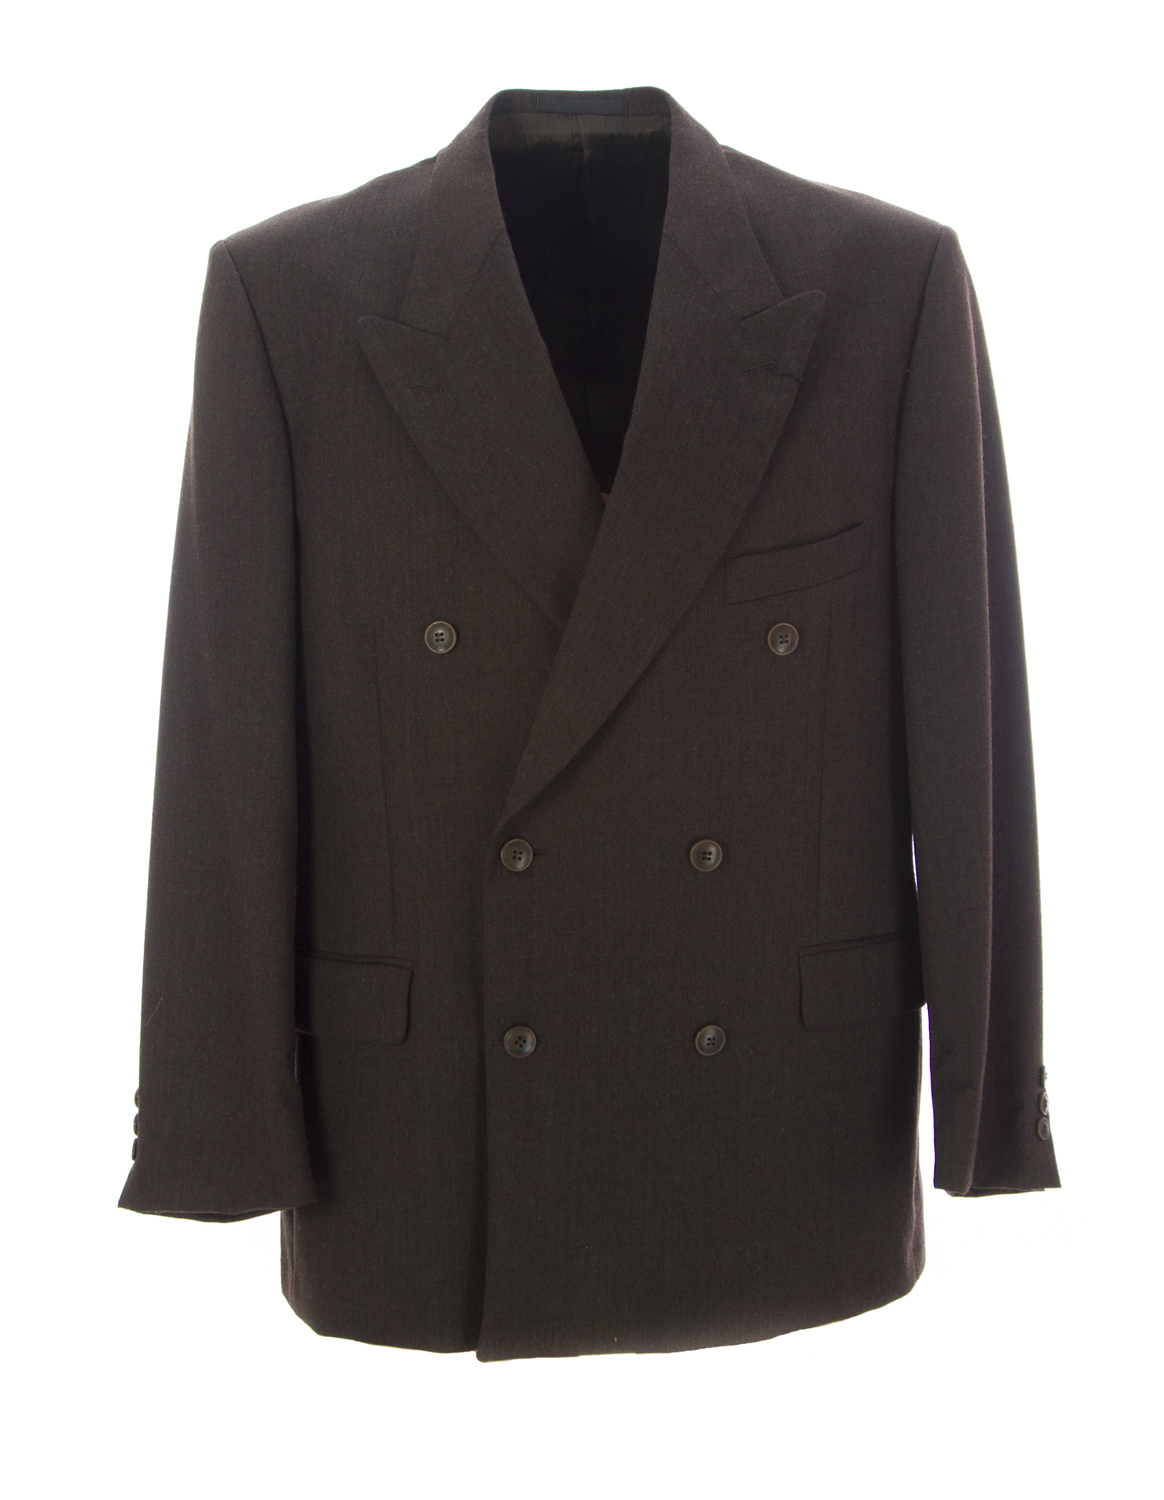 PIERRE CARDIN Men's Brown Wool Lined Suit Blazer 12502N Size 42 R $385 ...